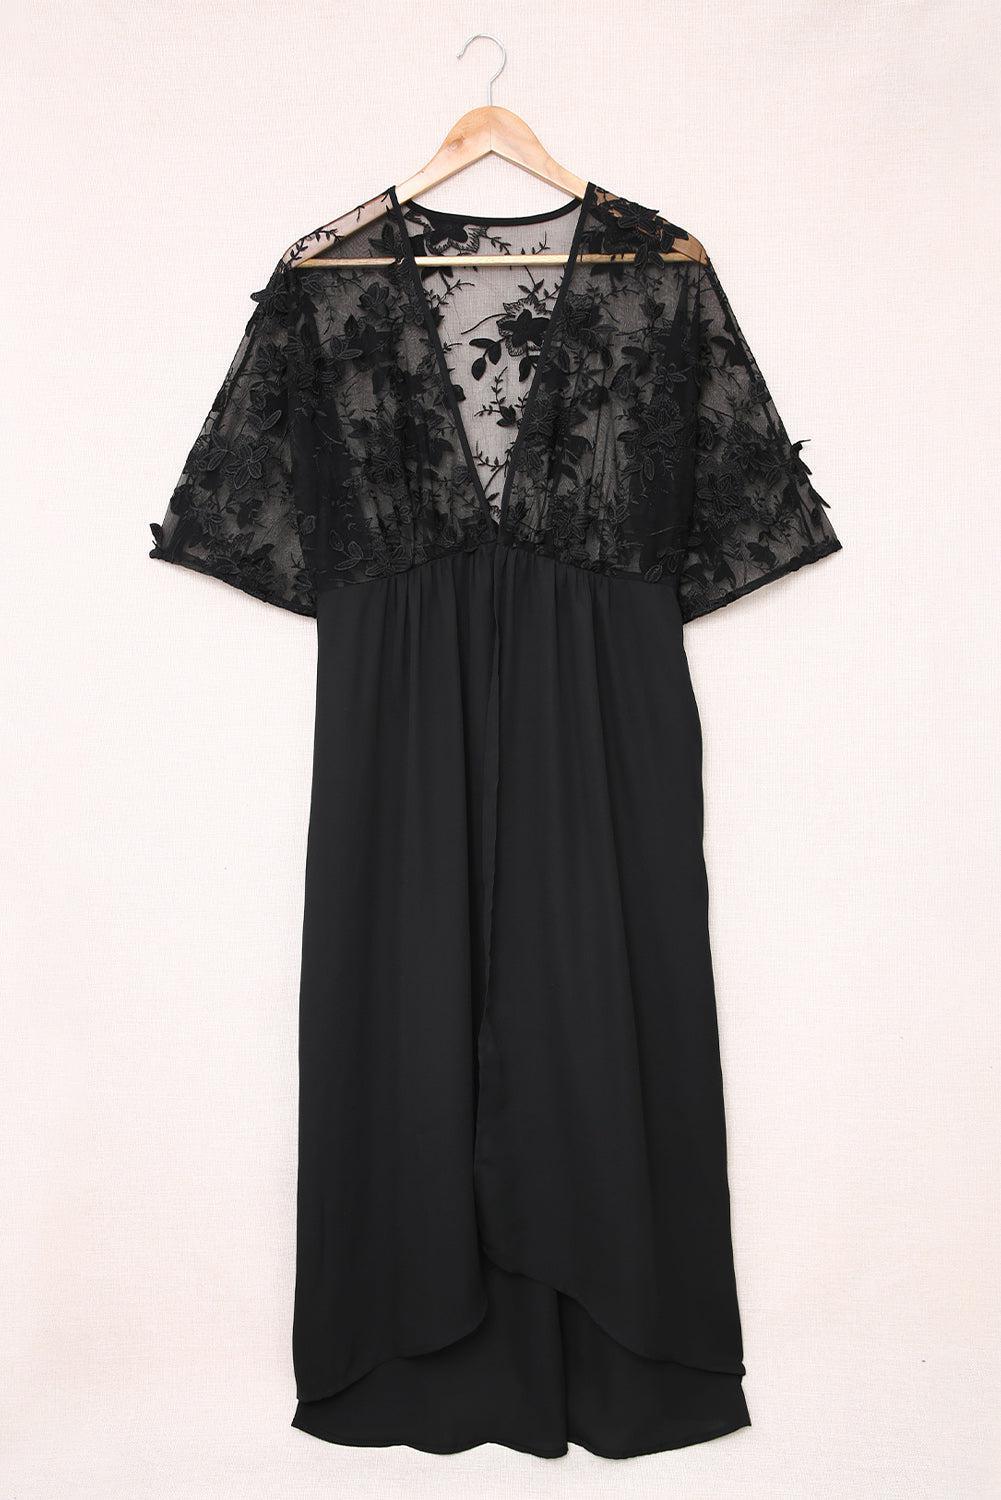 a black dress hanging on a hanger